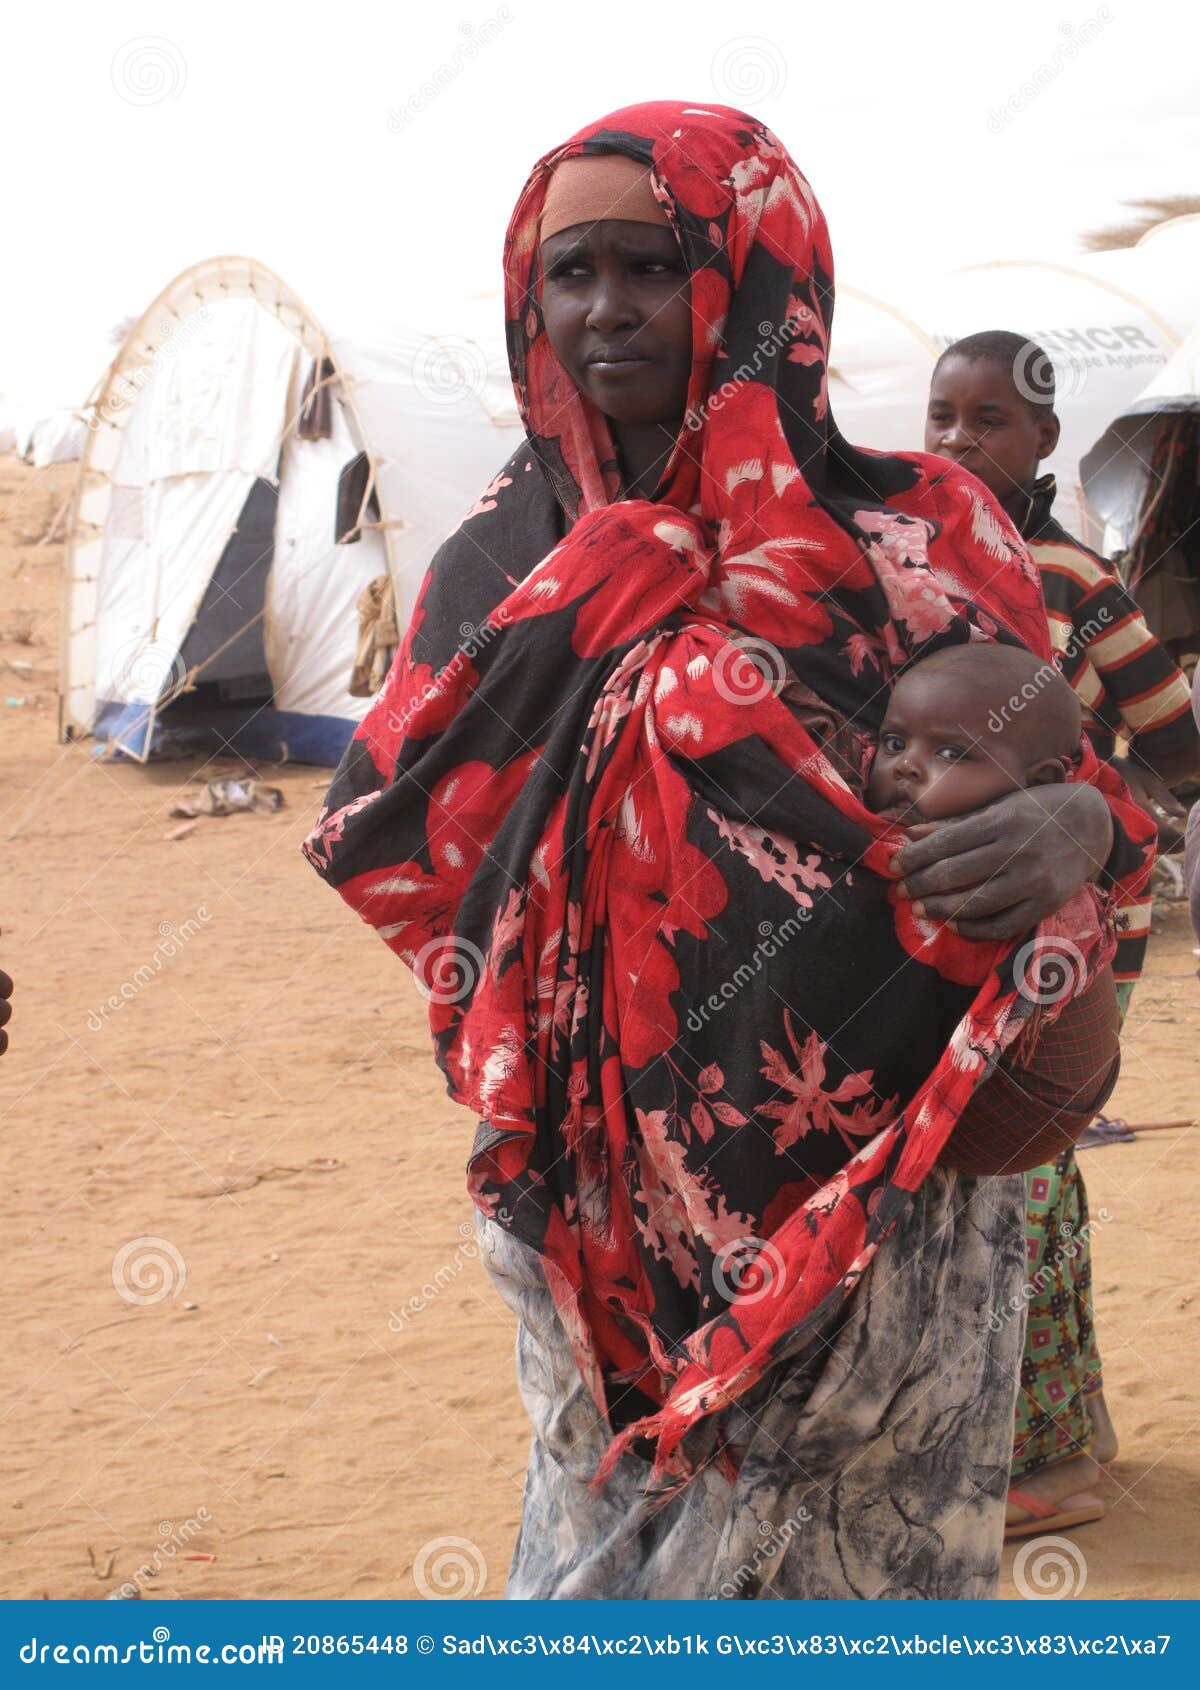 索马里10年来最严重干旱 35万儿童面临死亡威胁 - 国际 - 即时国际